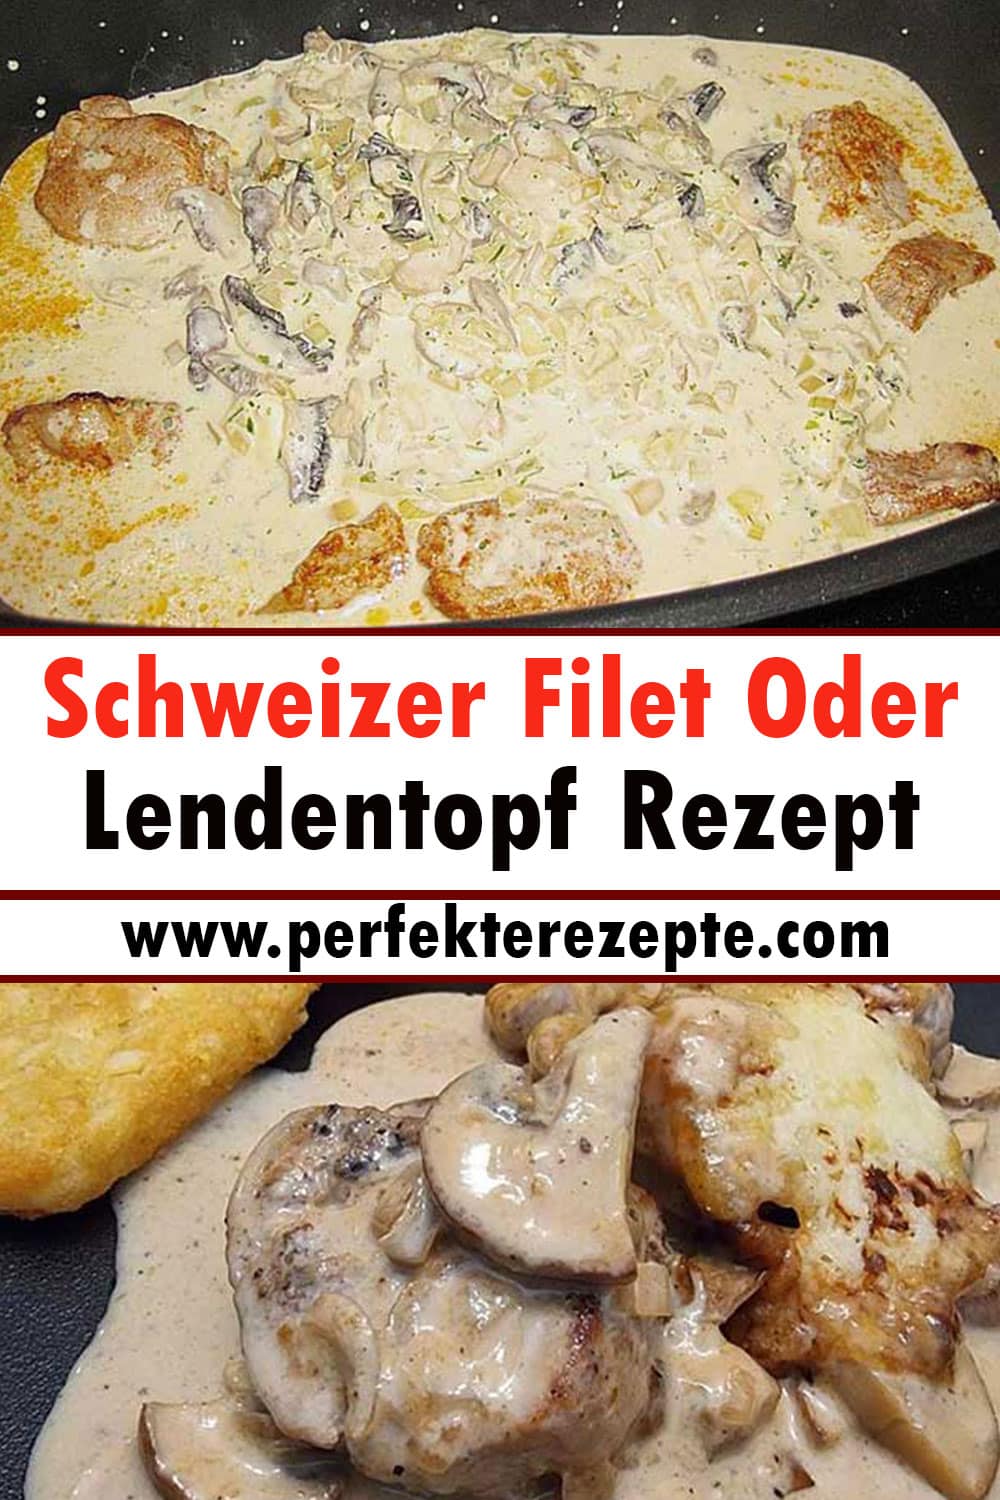 Schweizer Filet Oder Lendentopf Rezept